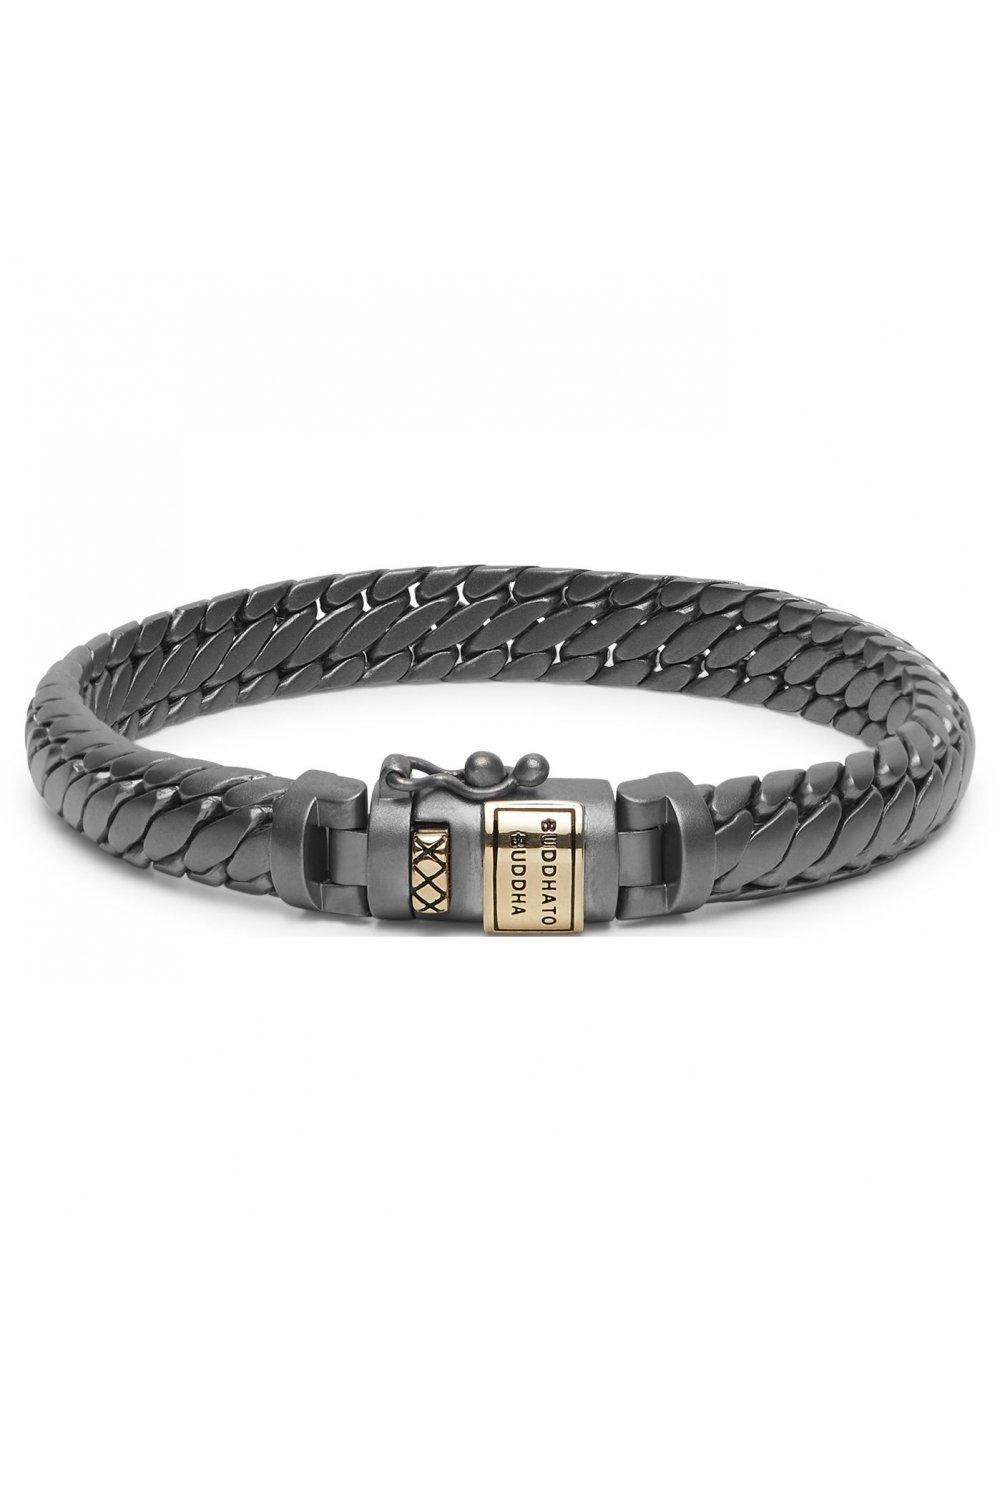 ben xs sterling silver fashion bracelet - 001k01070b106